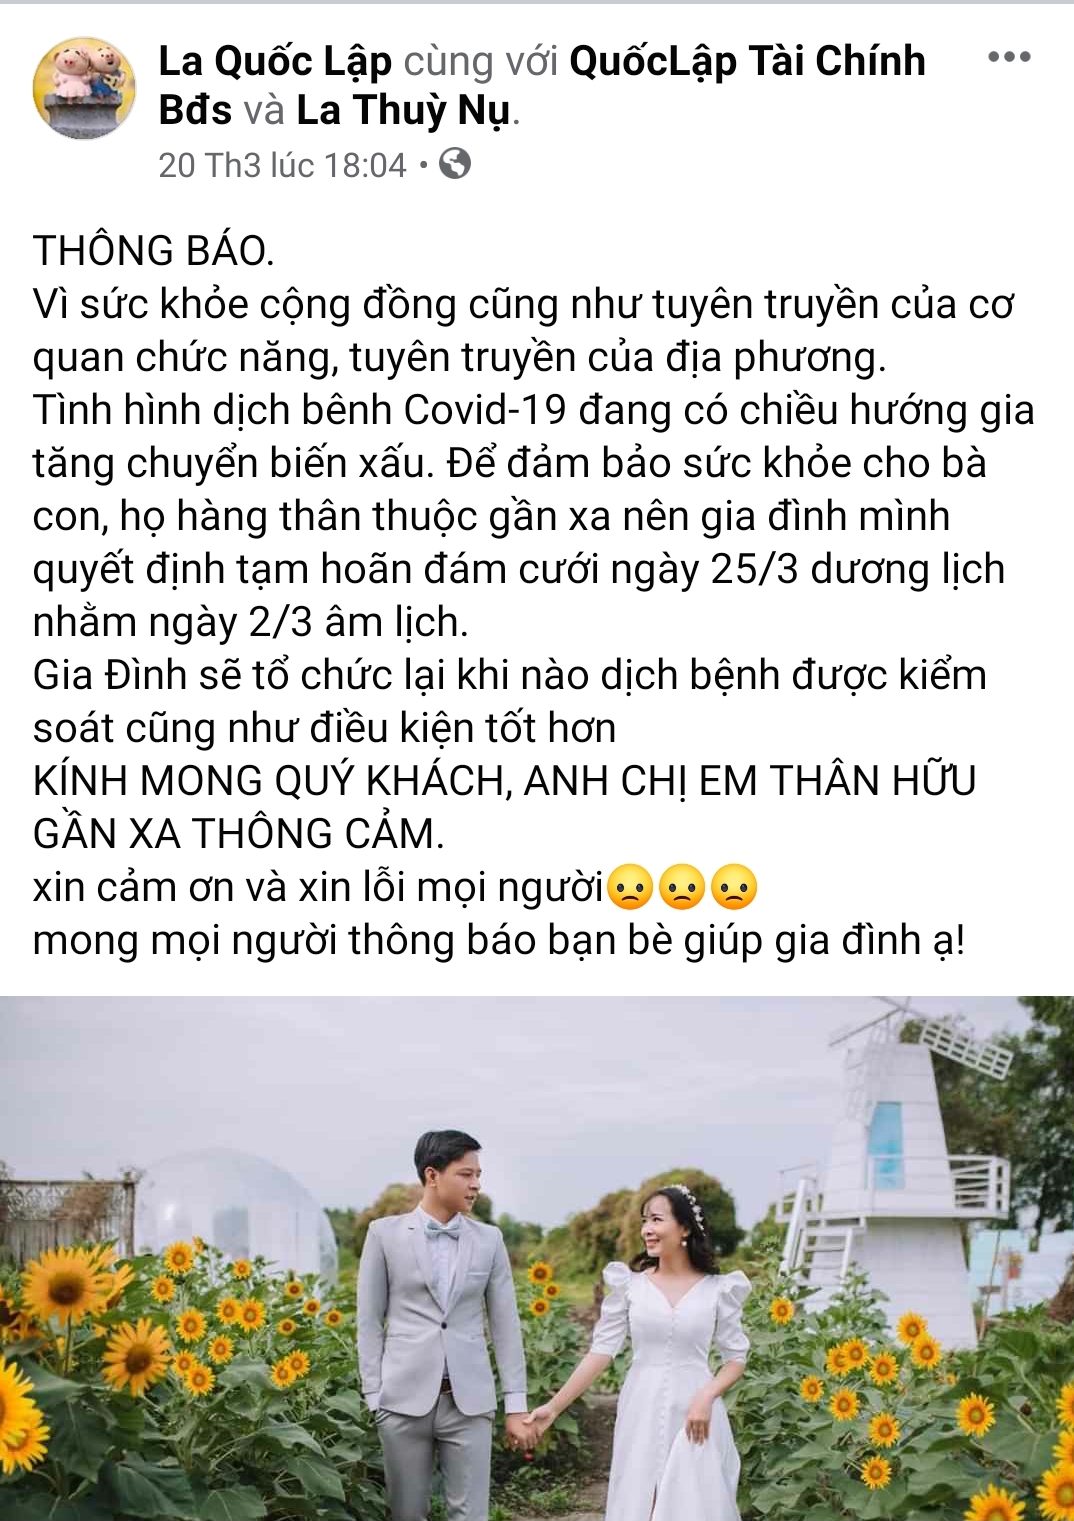 Thông báo hoãn cưới của cặp đôi Quốc Lập - Thu Trinh trên trang Facebook cá nhân được nhiều người đồng tình, ủng hộ. (Ảnh chụp qua màn hình điện thoại) 